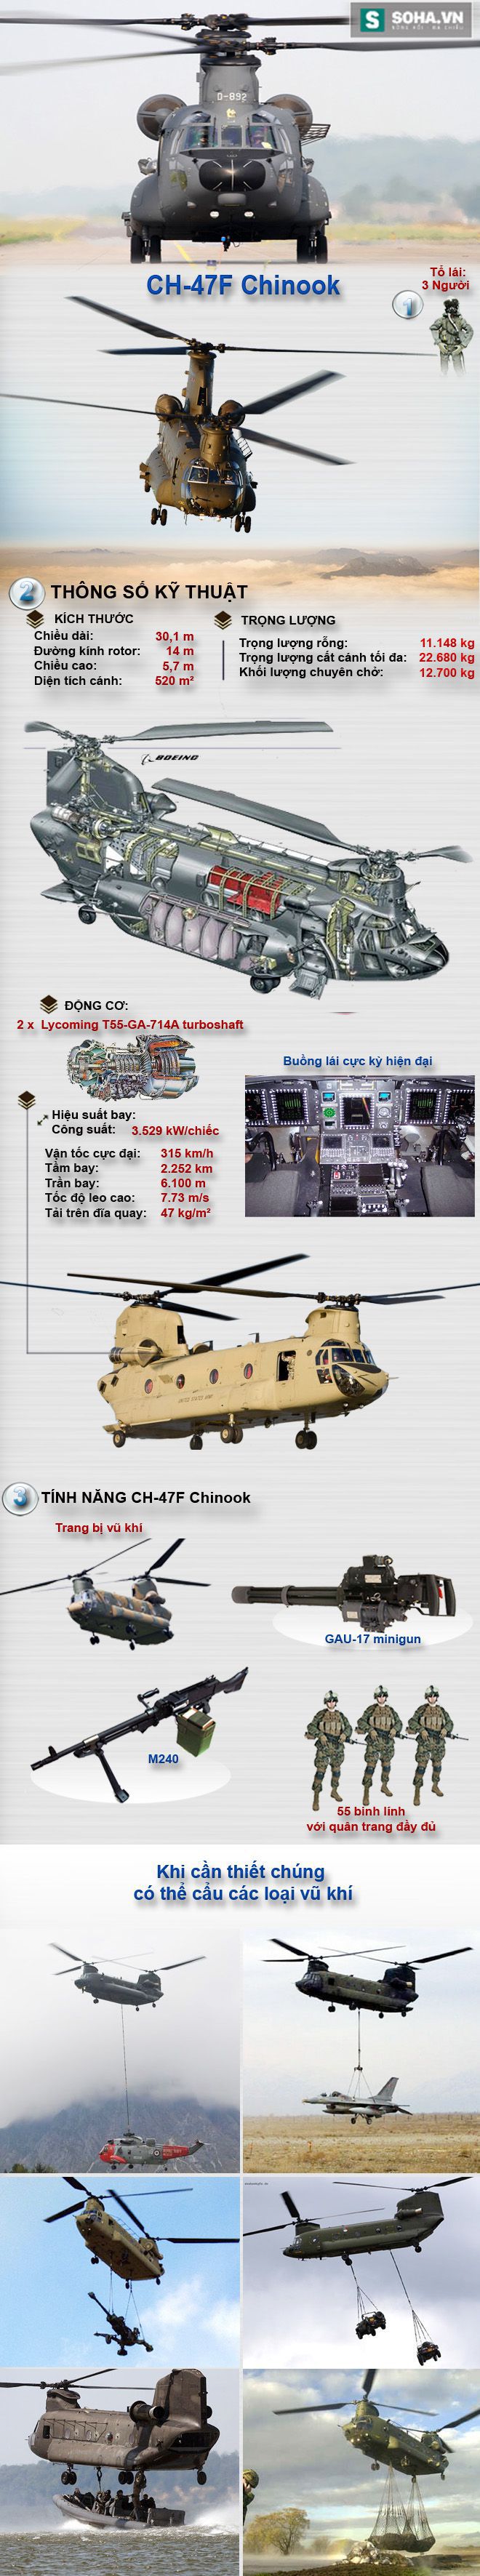 Việt Nam sẽ mua CH-47F cho Bộ đội Đổ bộ đường không? - Ảnh 1.